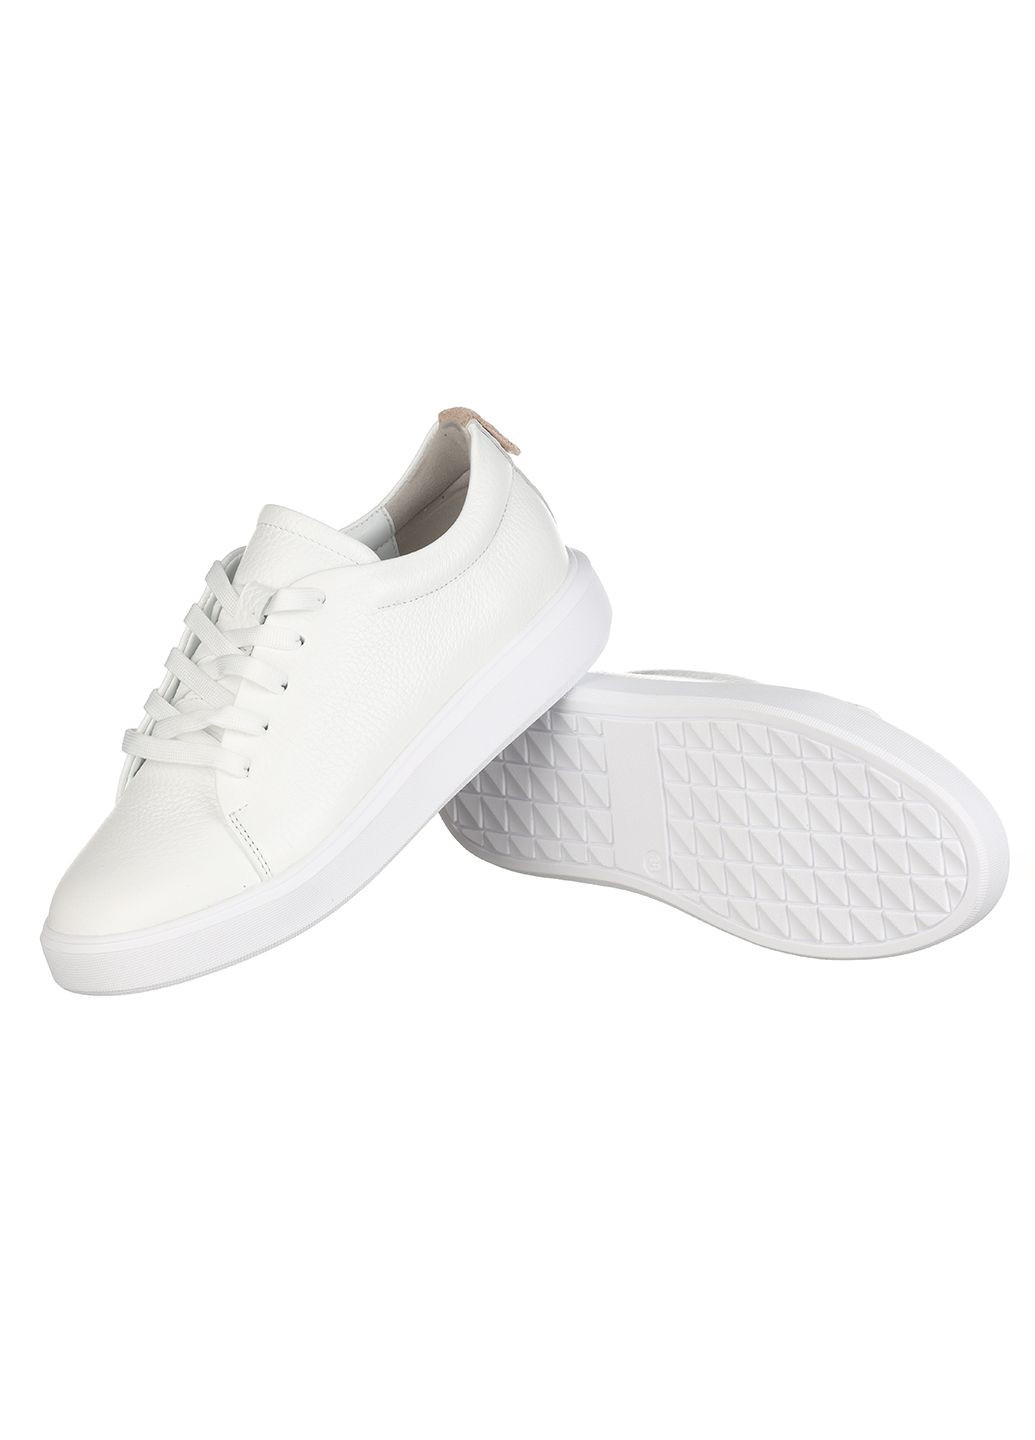 Білі осінні жіночі кросівки зі шкіри 0131-2314 Rispetto